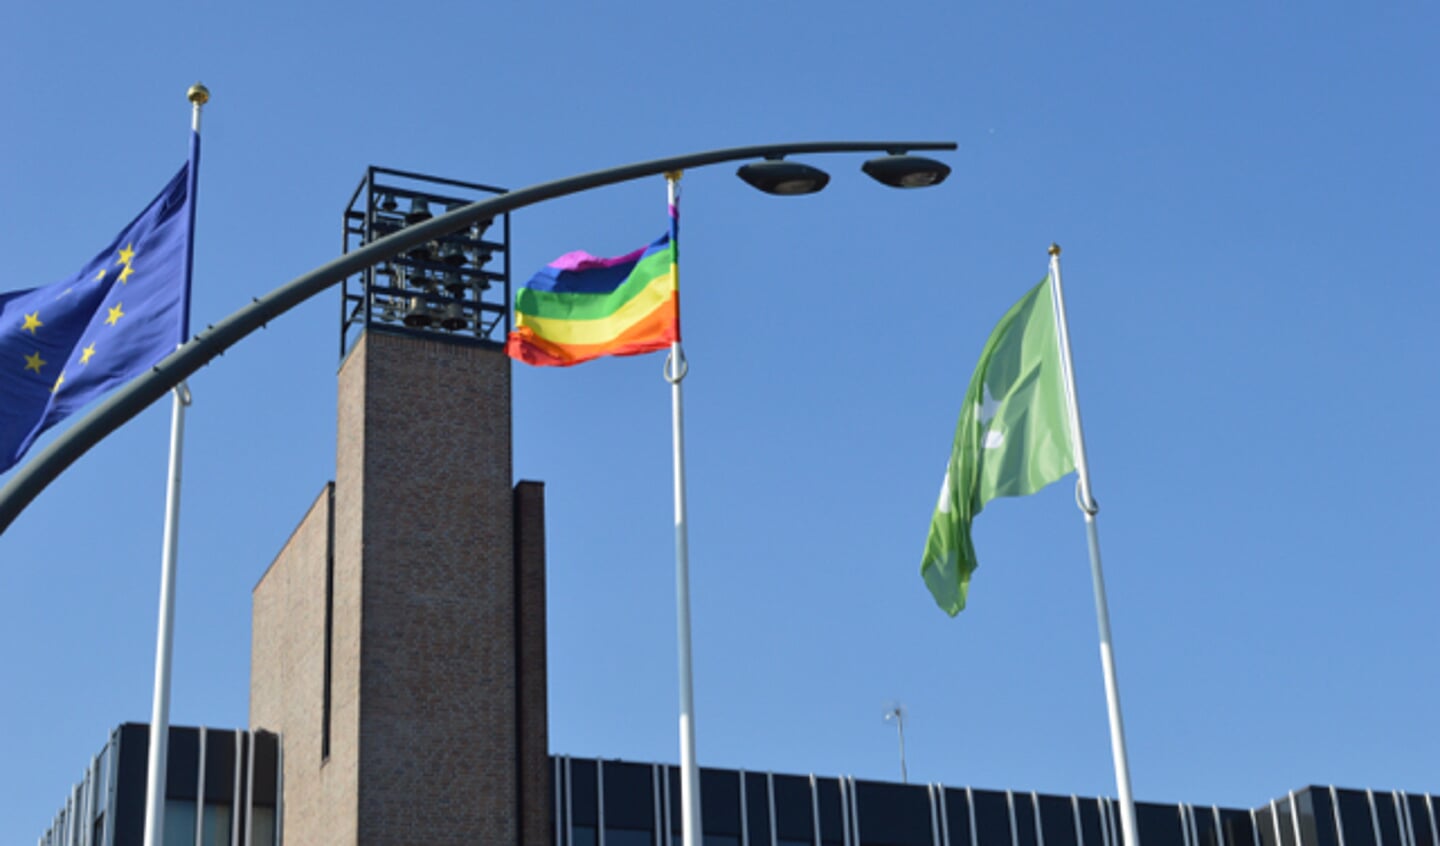 Vlag voor Coming Out Day hangt bij gemeentehuis ondersteboven